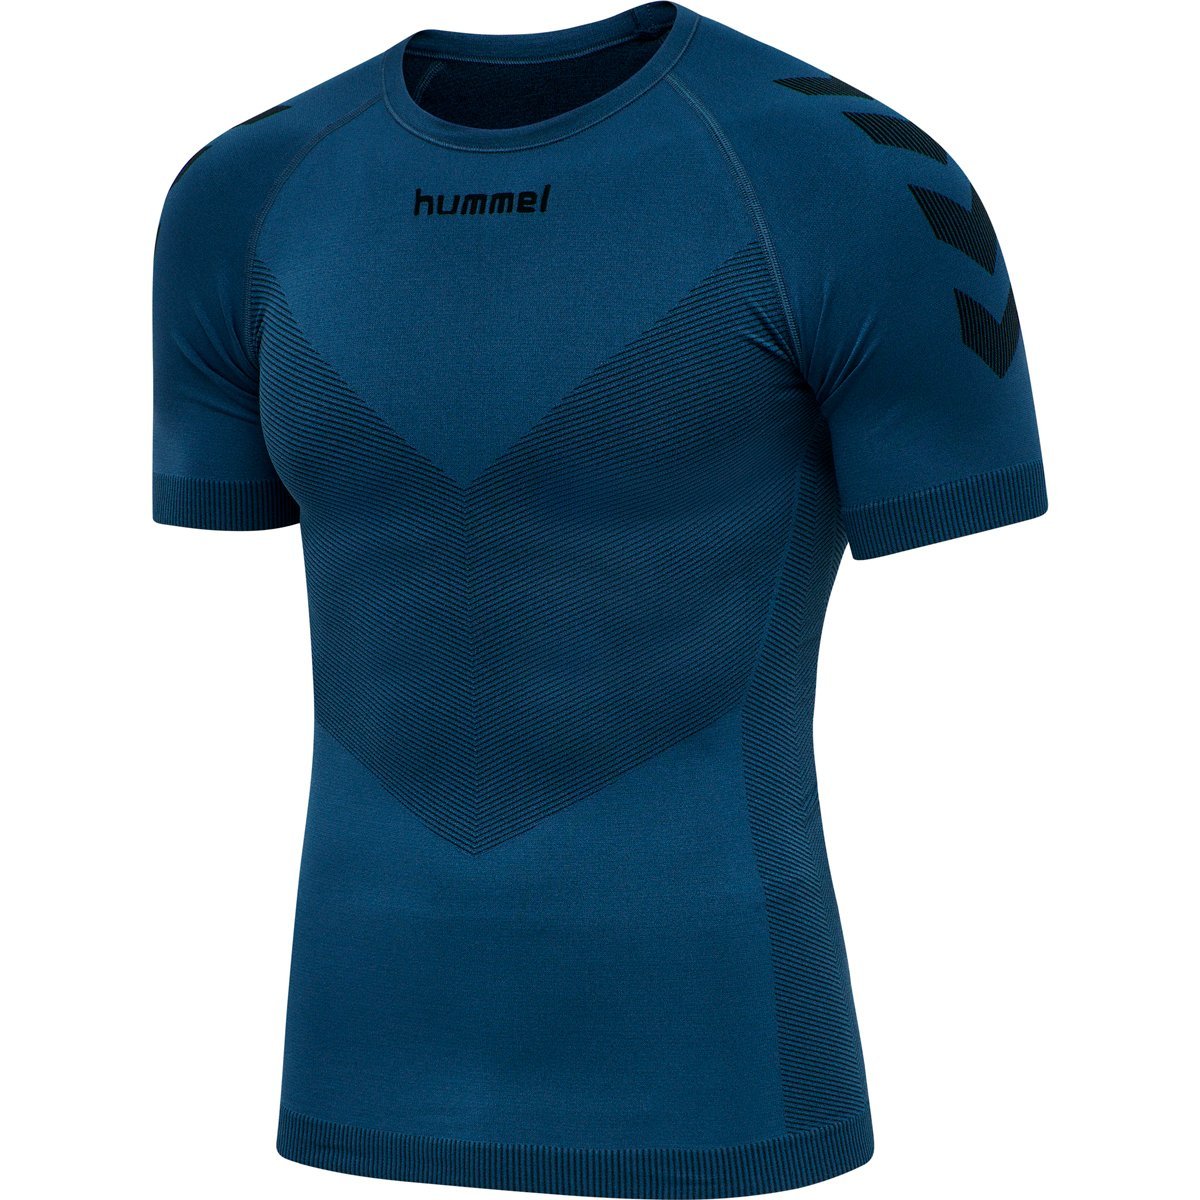 Hummel First Seamless Jersey S/S T-shirt Herre thumbnail